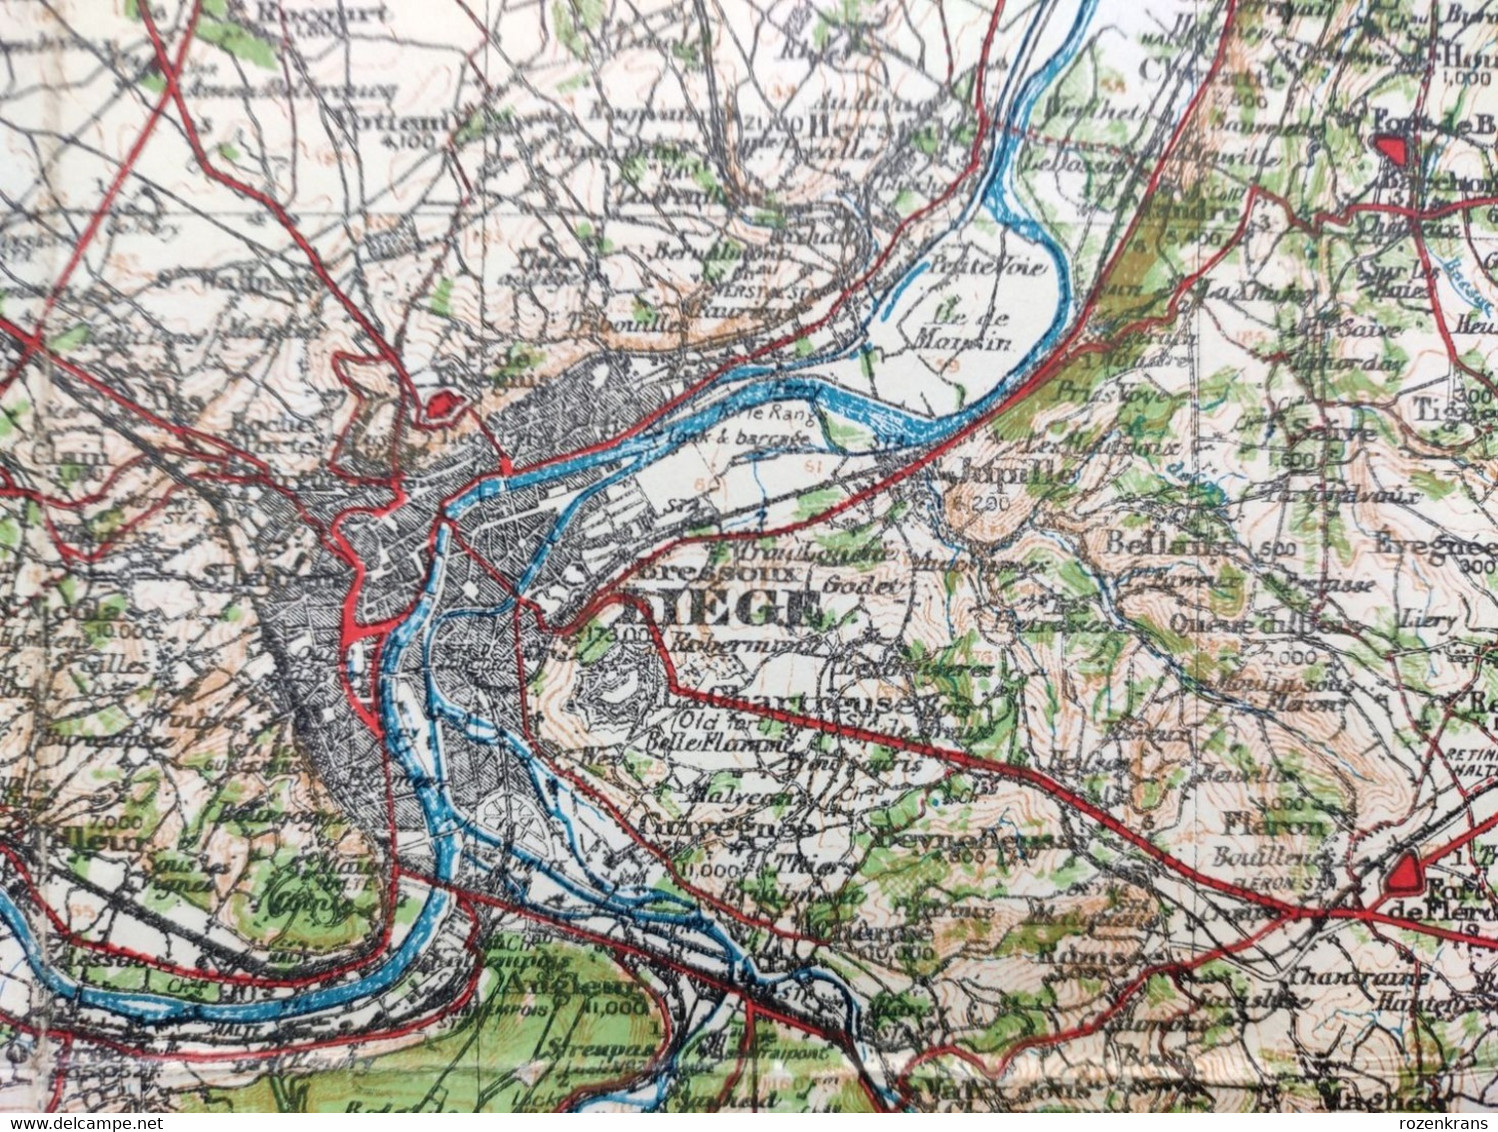 Carte Topographique Militaire UK War Office 1919 World War 1 WW1 Liege Verviers Huy Hasselt Maastricht Tongeren Diest - Topographische Karten